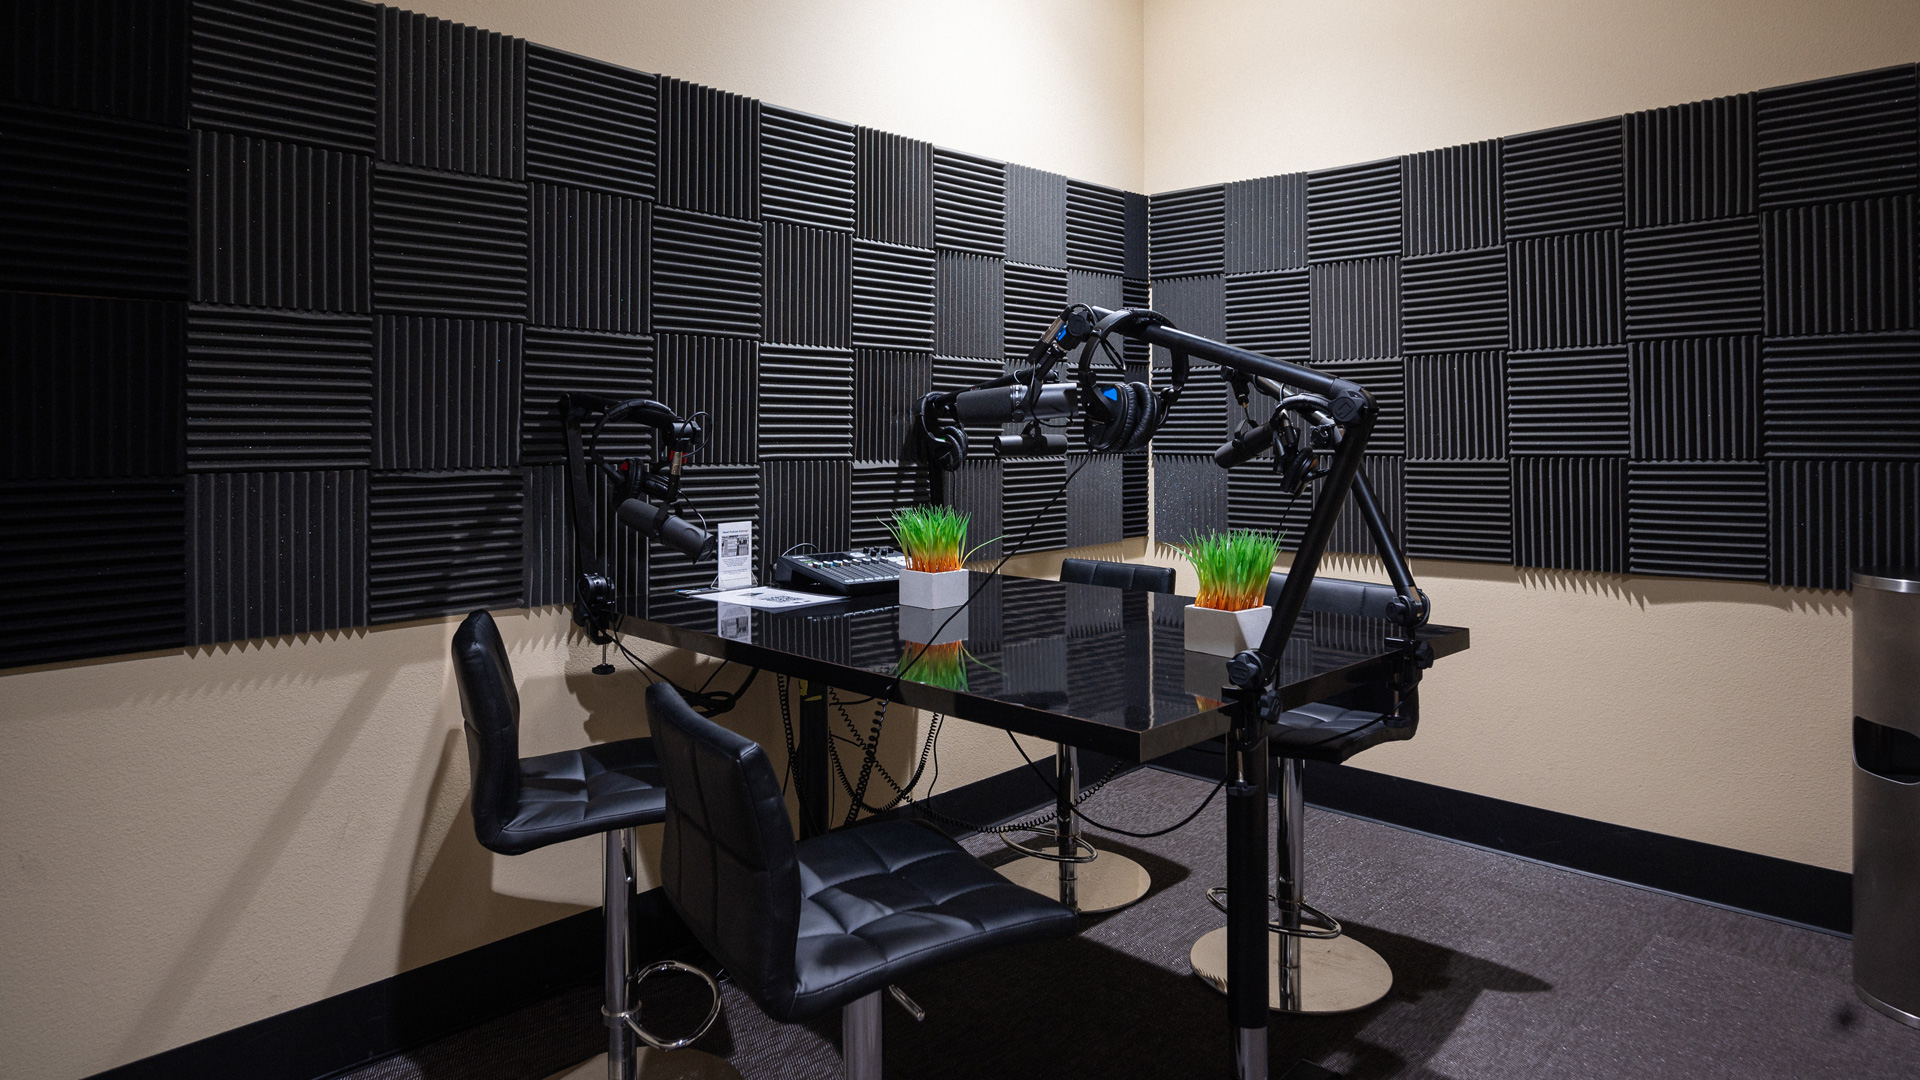 Podcast recording studio